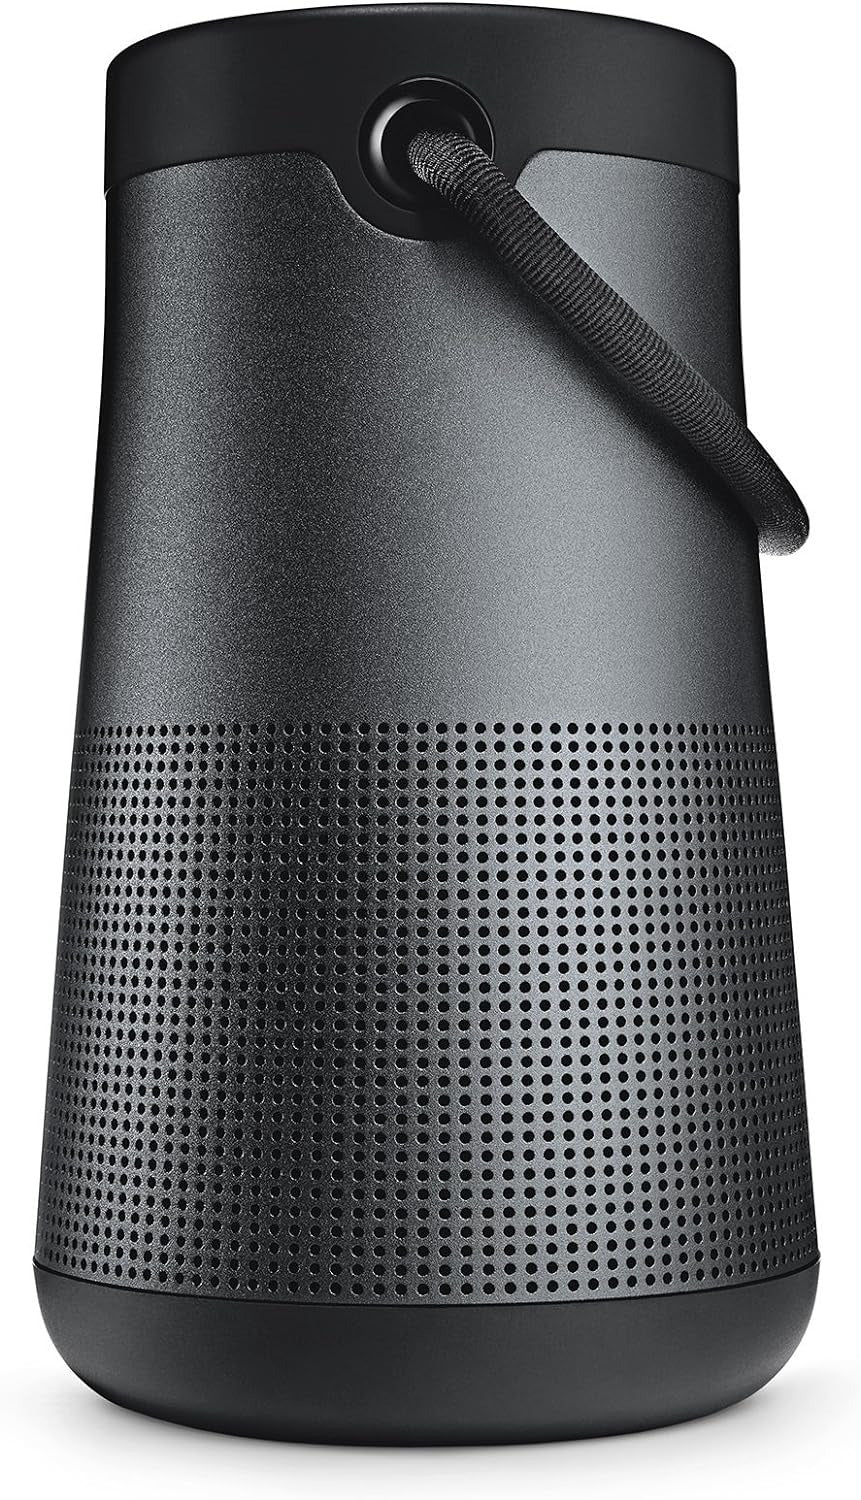 Bose SoundLink Revolve+ Bluetooth 360 Speaker - Black (Certified Refurbished)